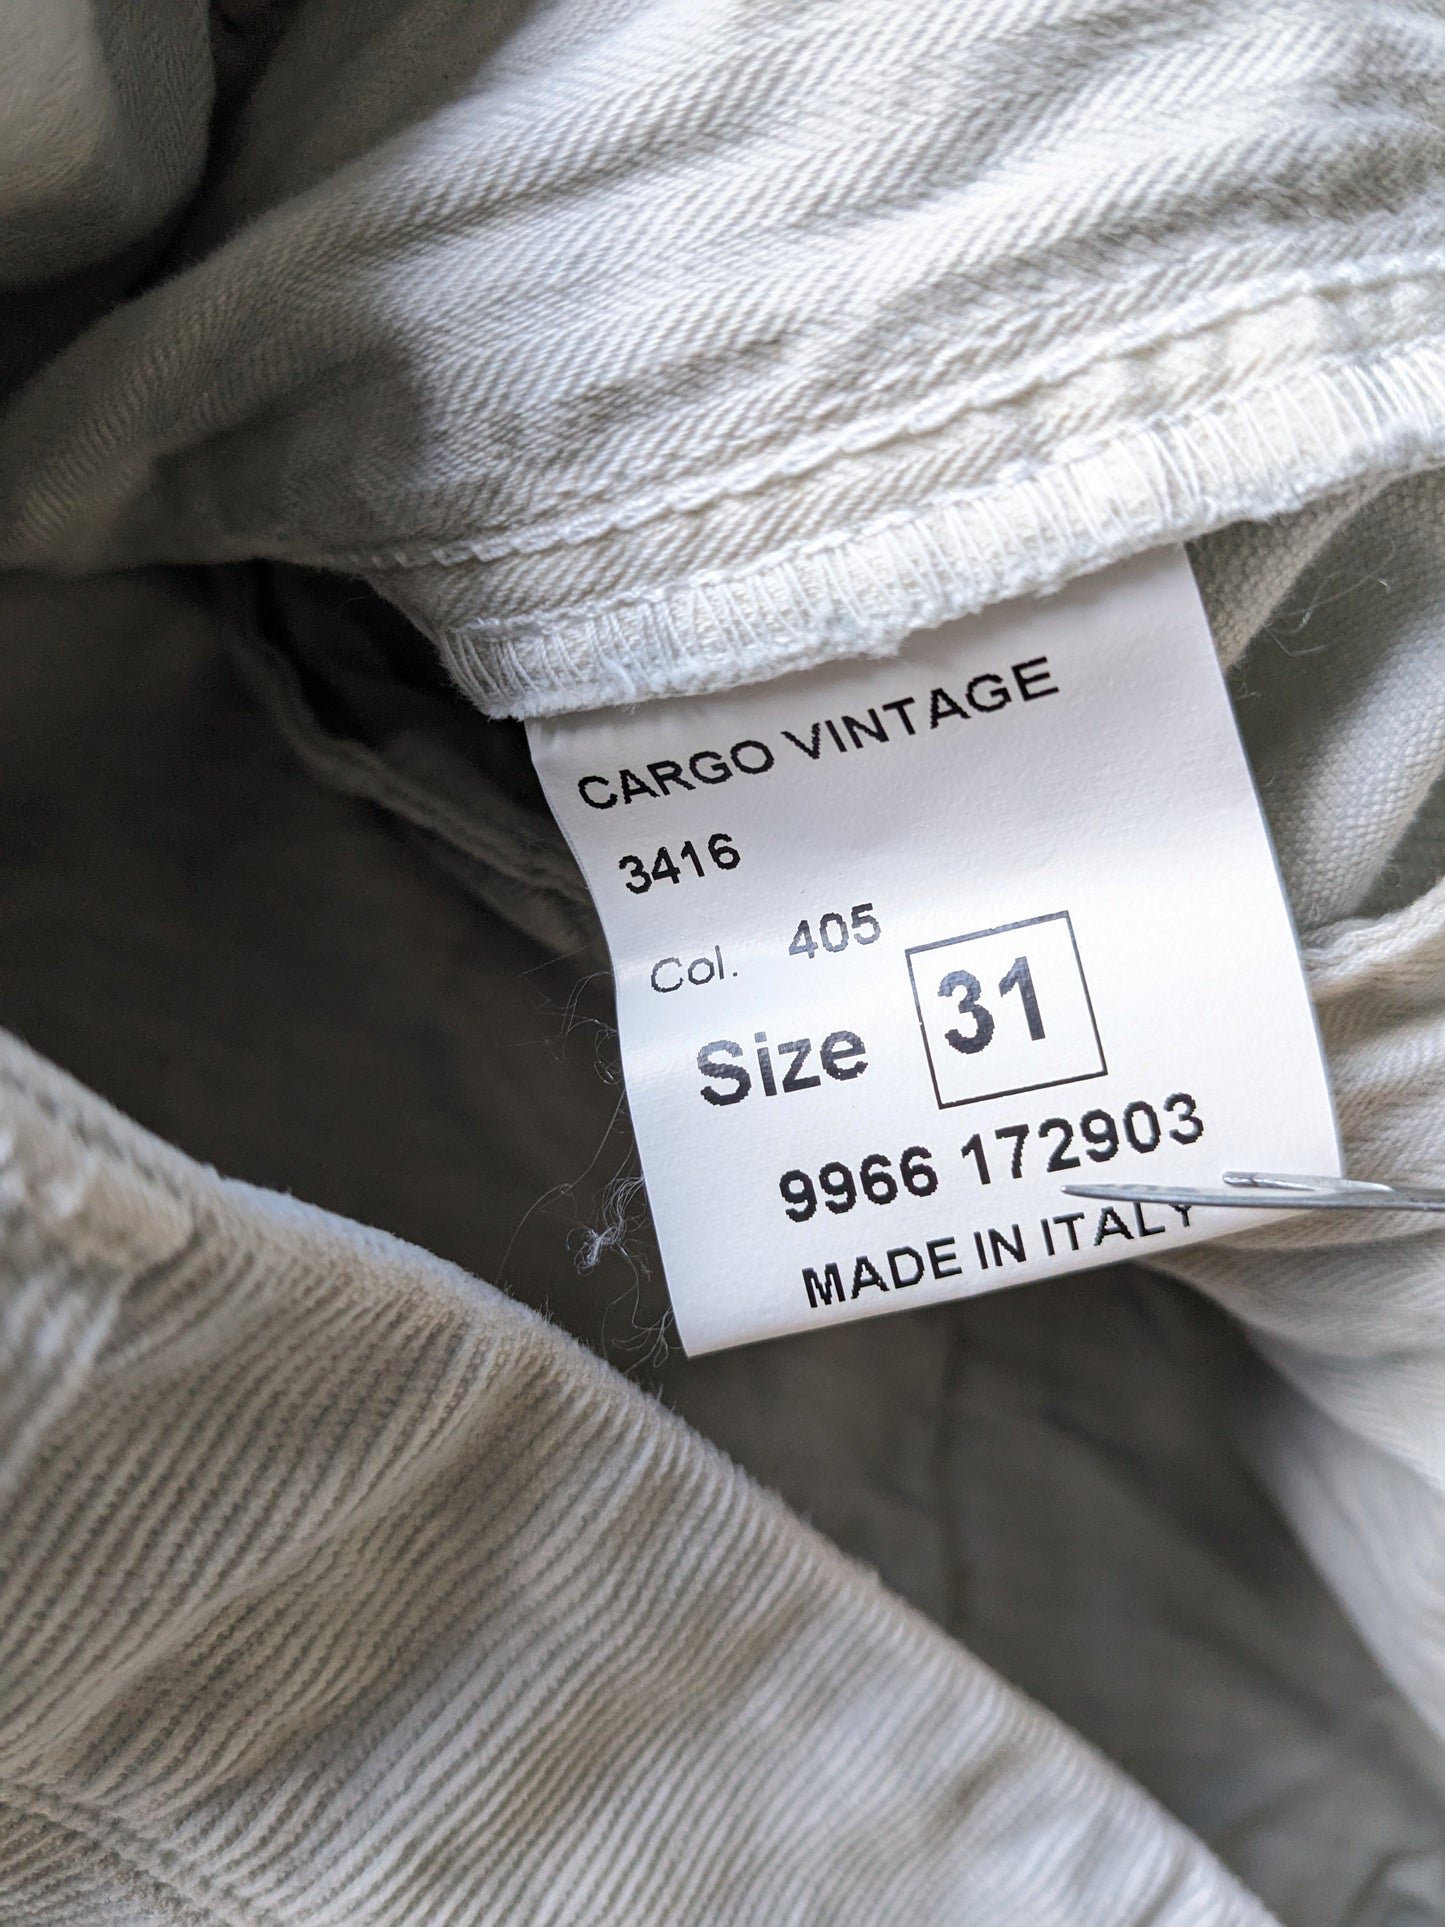 Pantaloni cargo Artu Napoli in costina. Colore grigio chiaro. Taglia W31 - L30. Stirata.